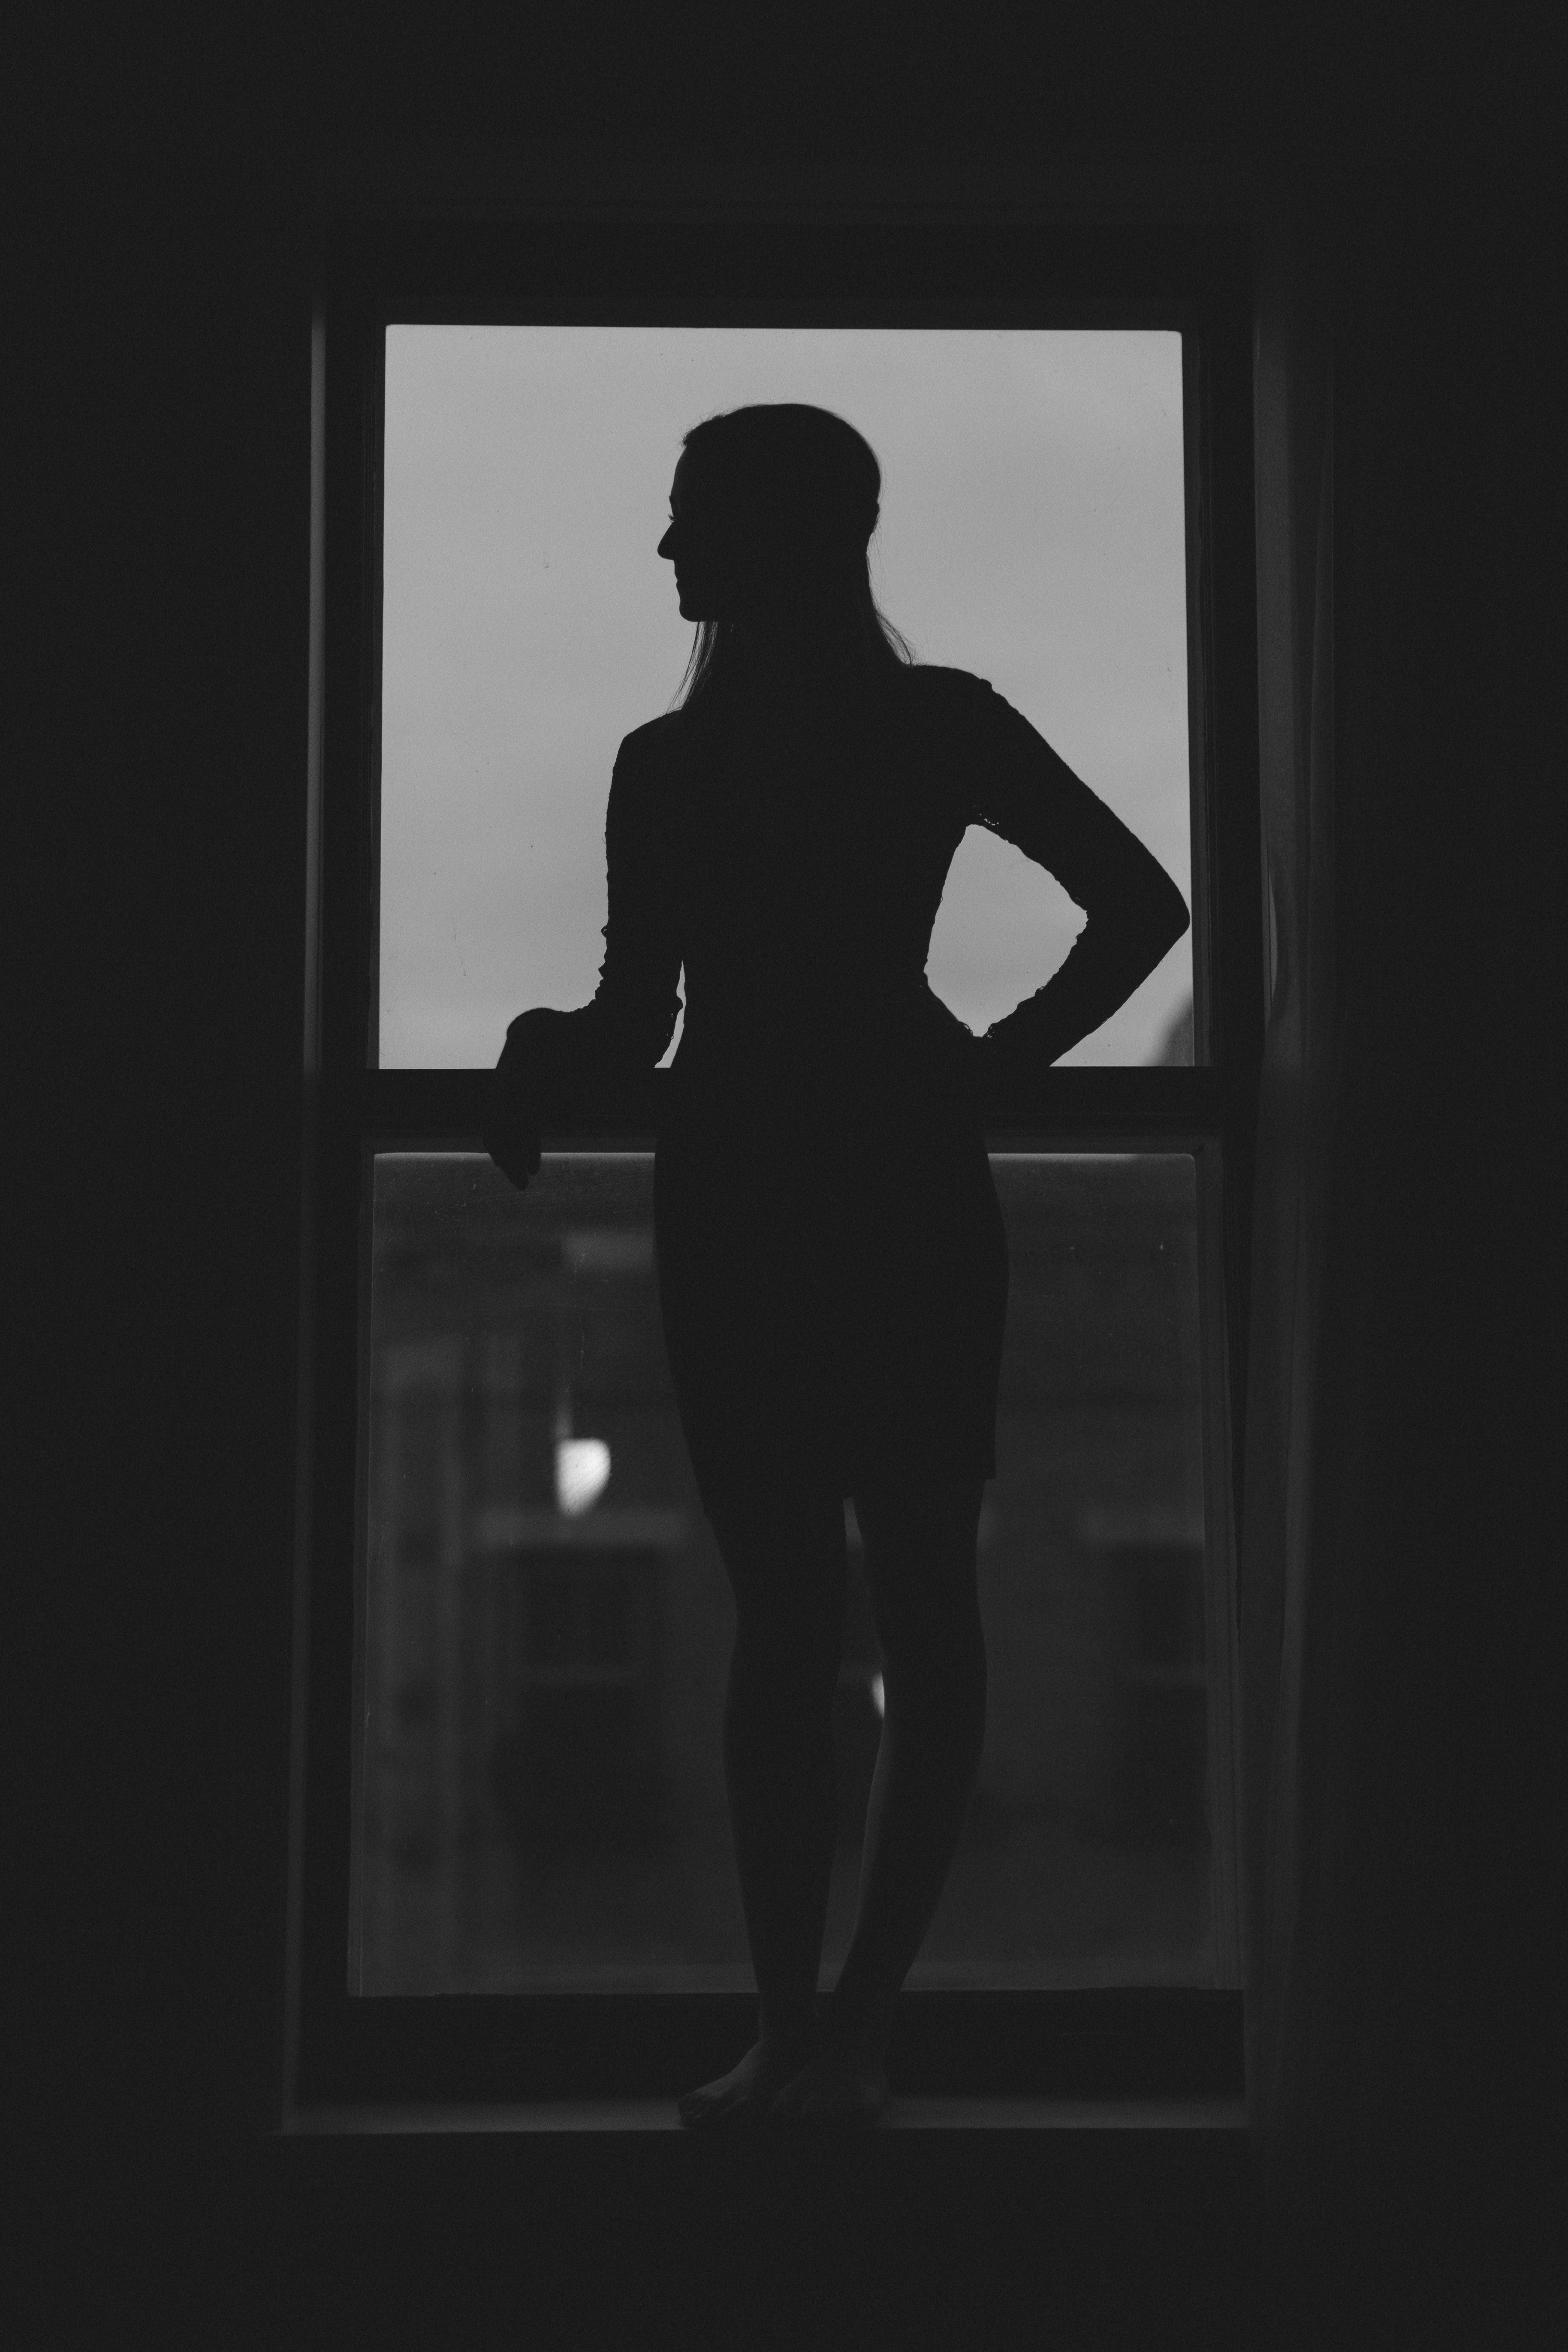 Женщина в окне фото черно белое